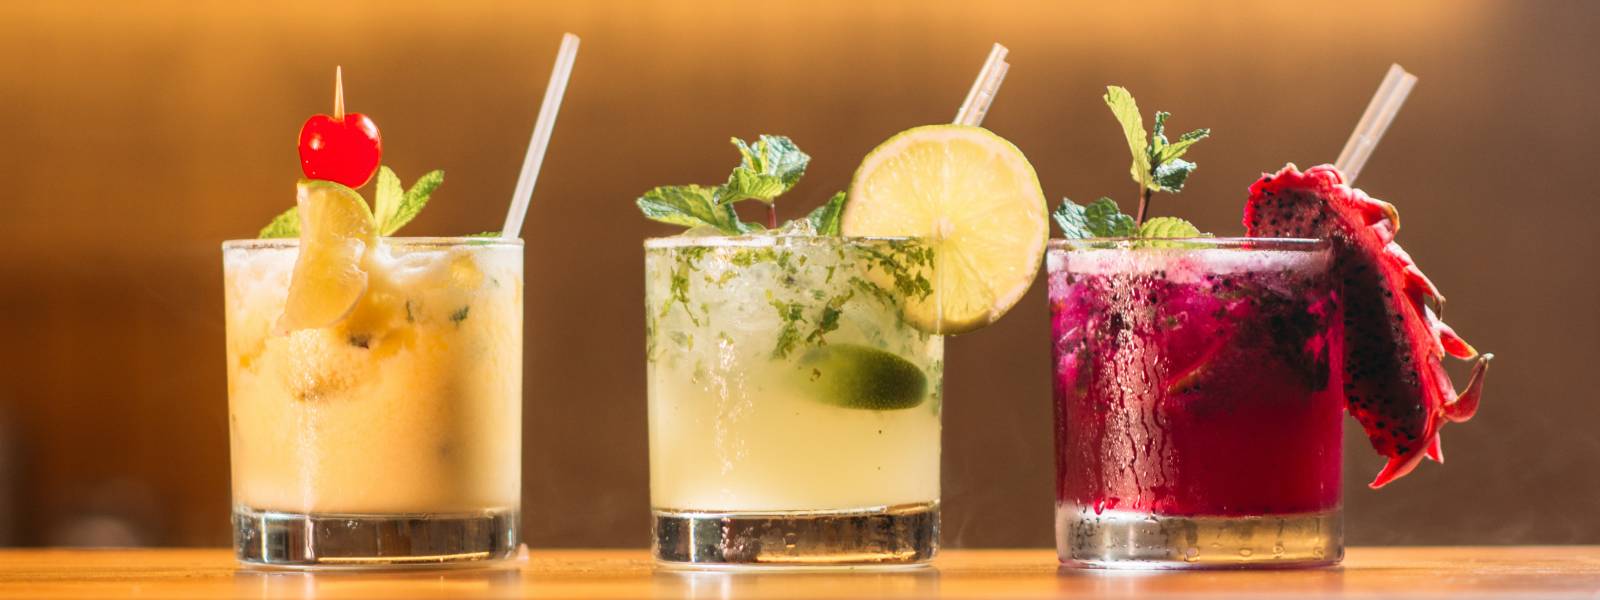 Drie kleurrijke cocktails op een rij